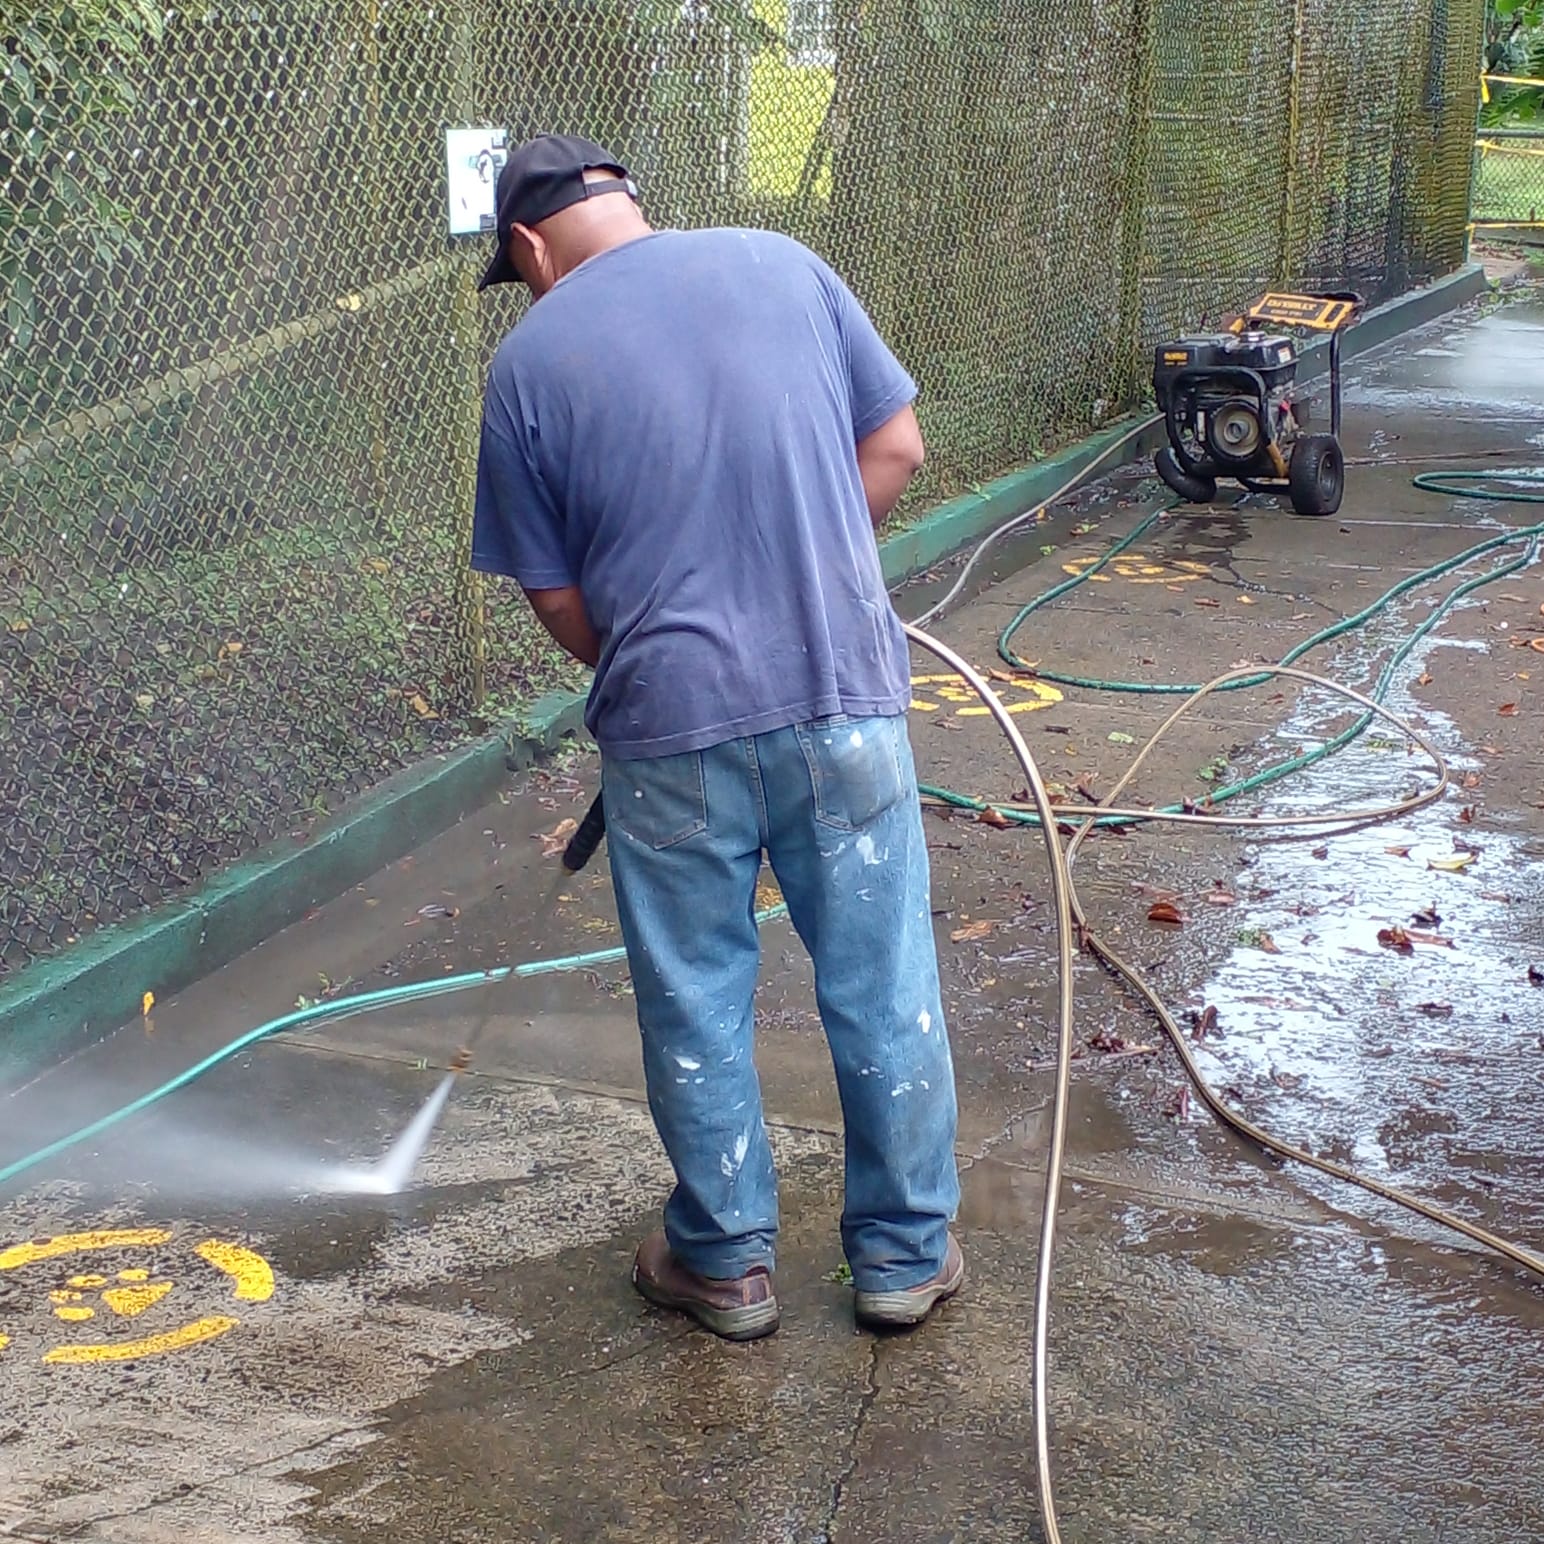 Voluntariado de la Alcaldía de Panamá realiza jornada de limpieza en el Parque Municipal Summit